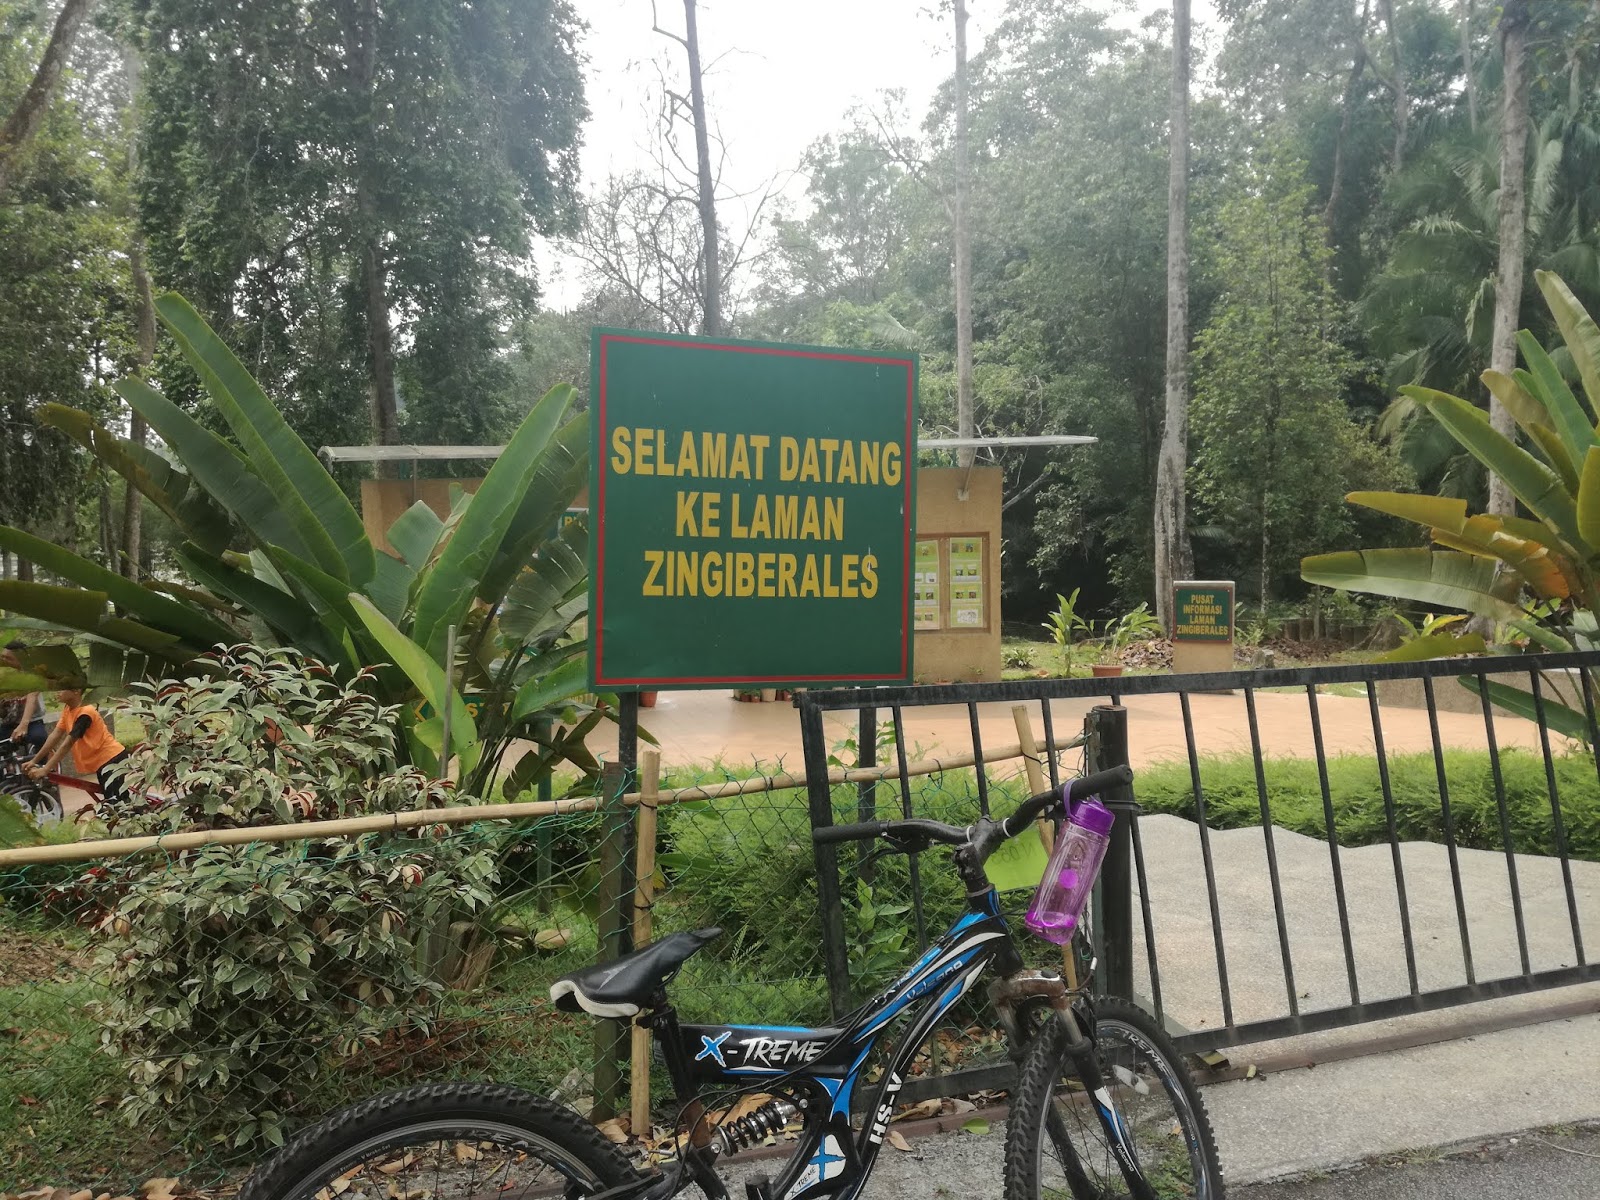 Farhana Jafri: Laman Zingiberales, Bukit Cerakah Shah Alam